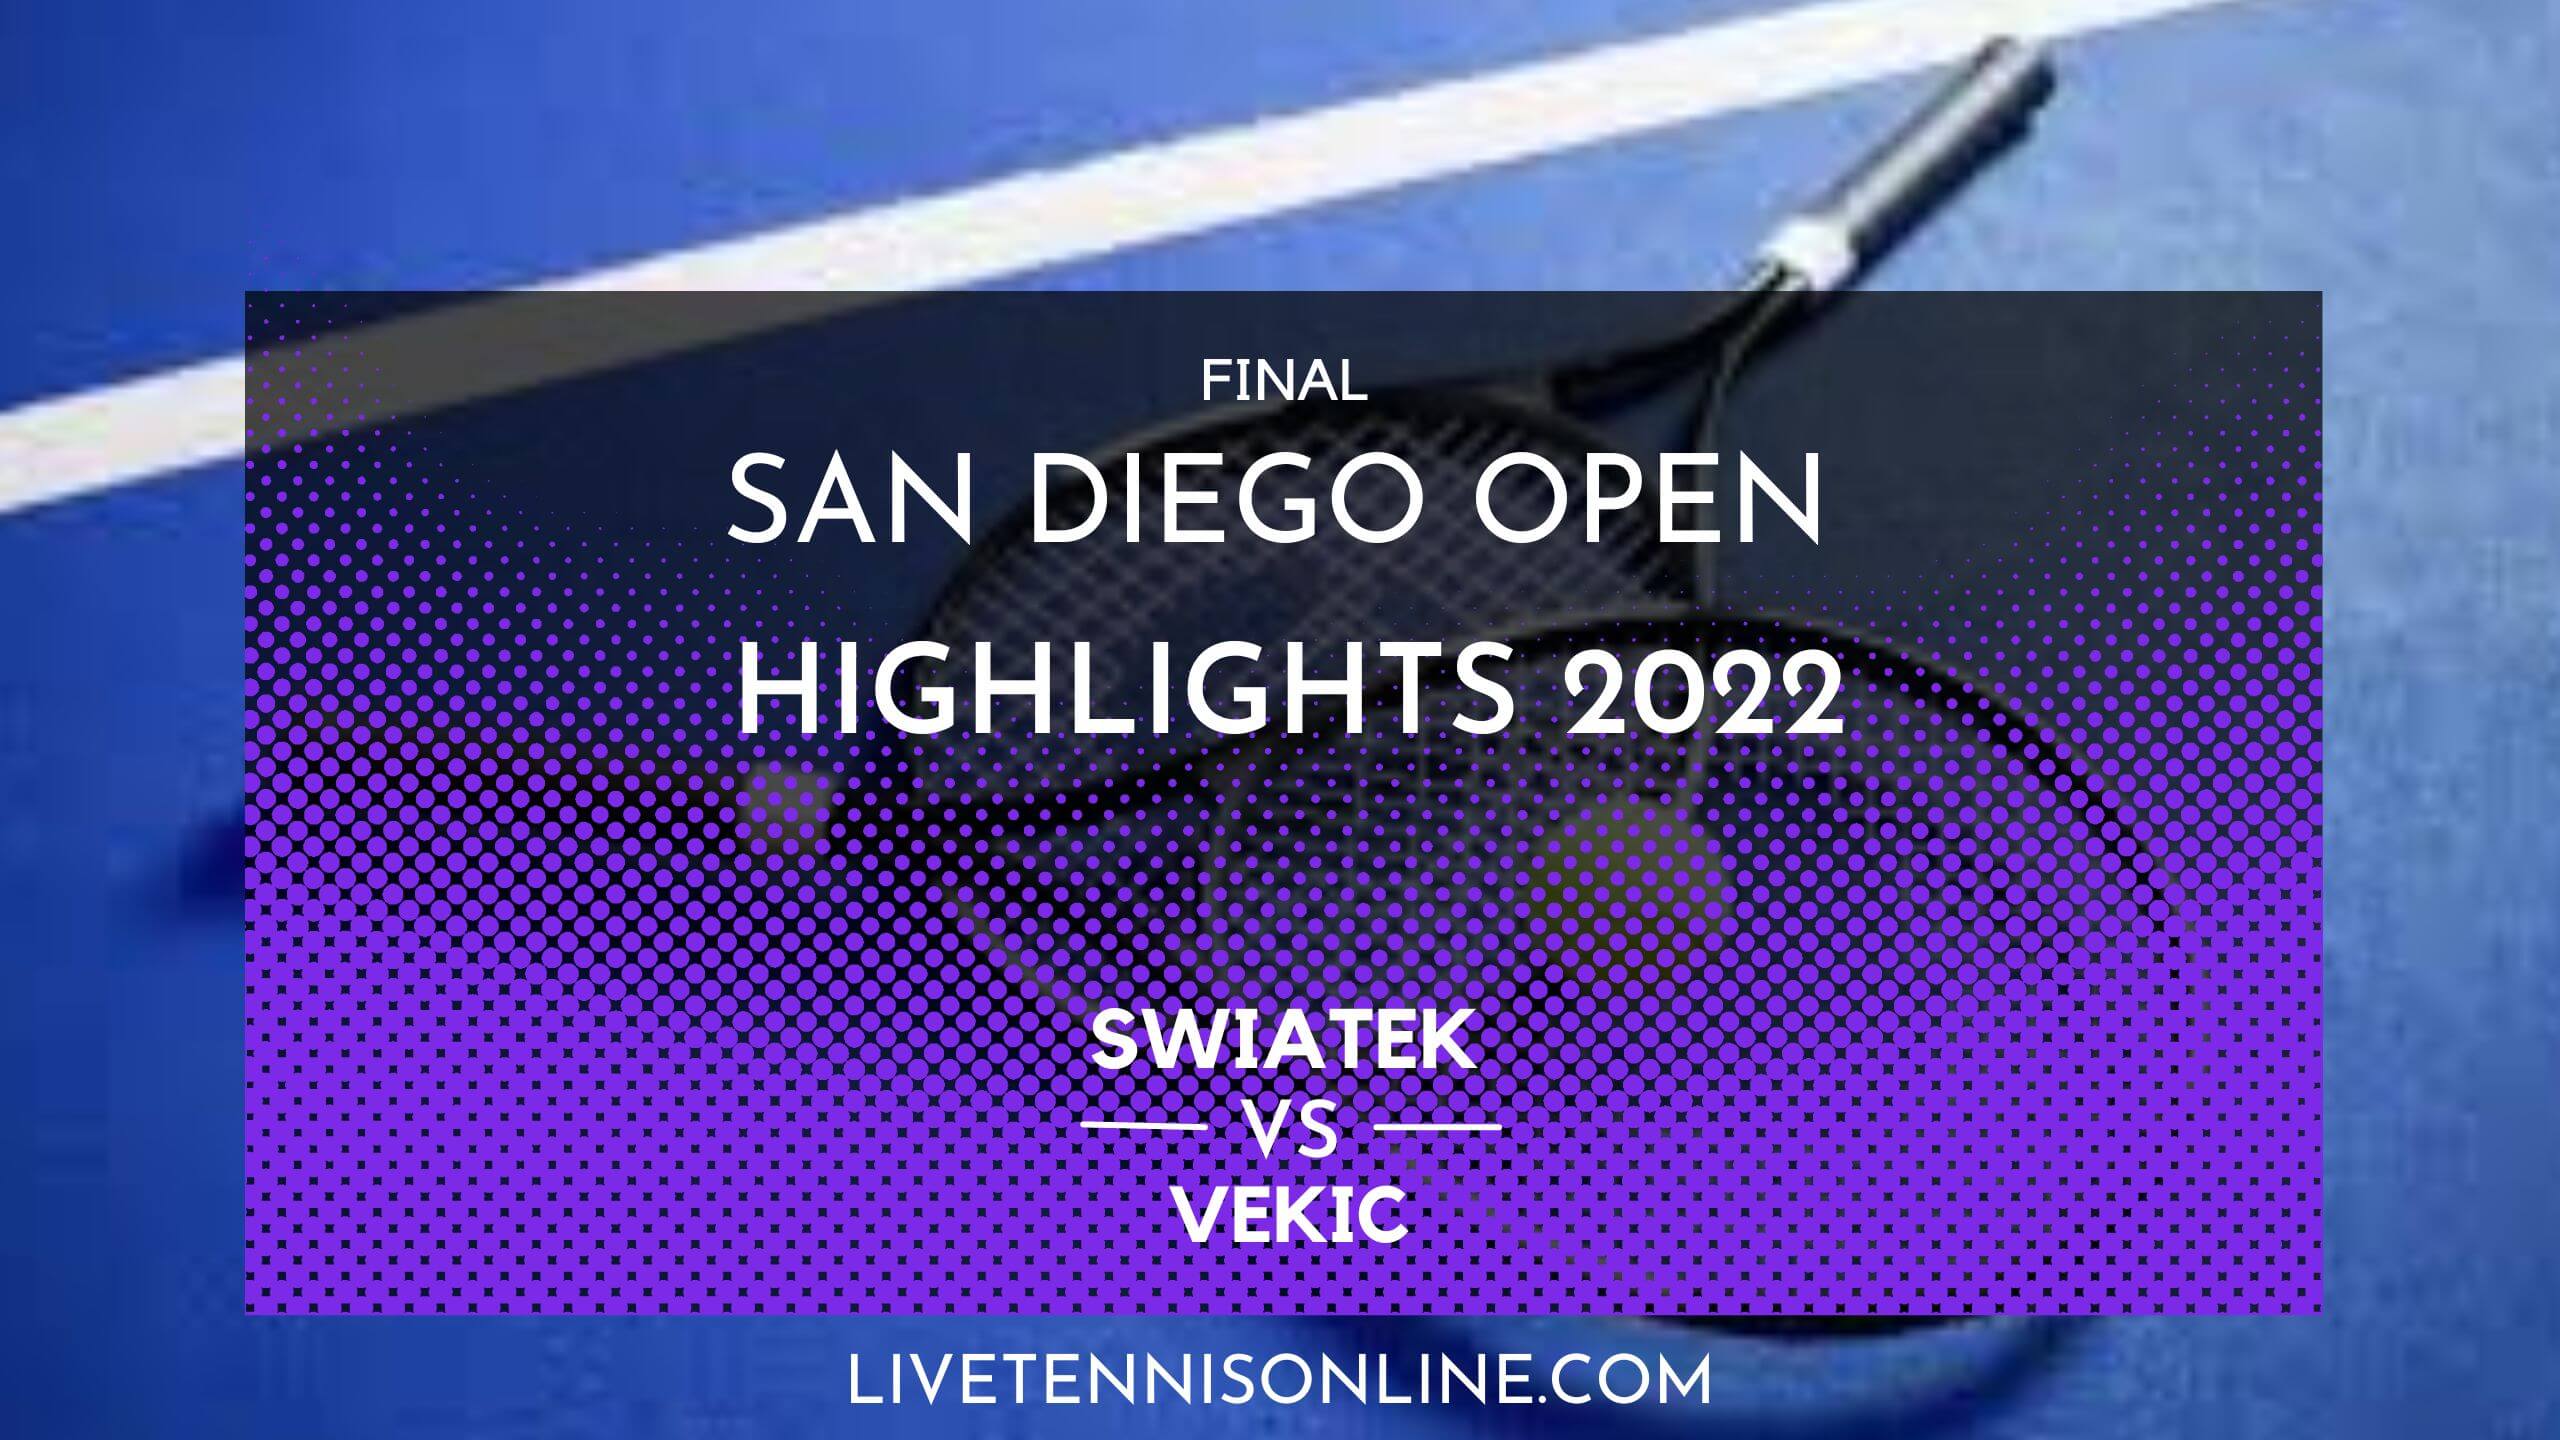 Swiatek Vs Vekic Final Highlights 2022 San Diego Open